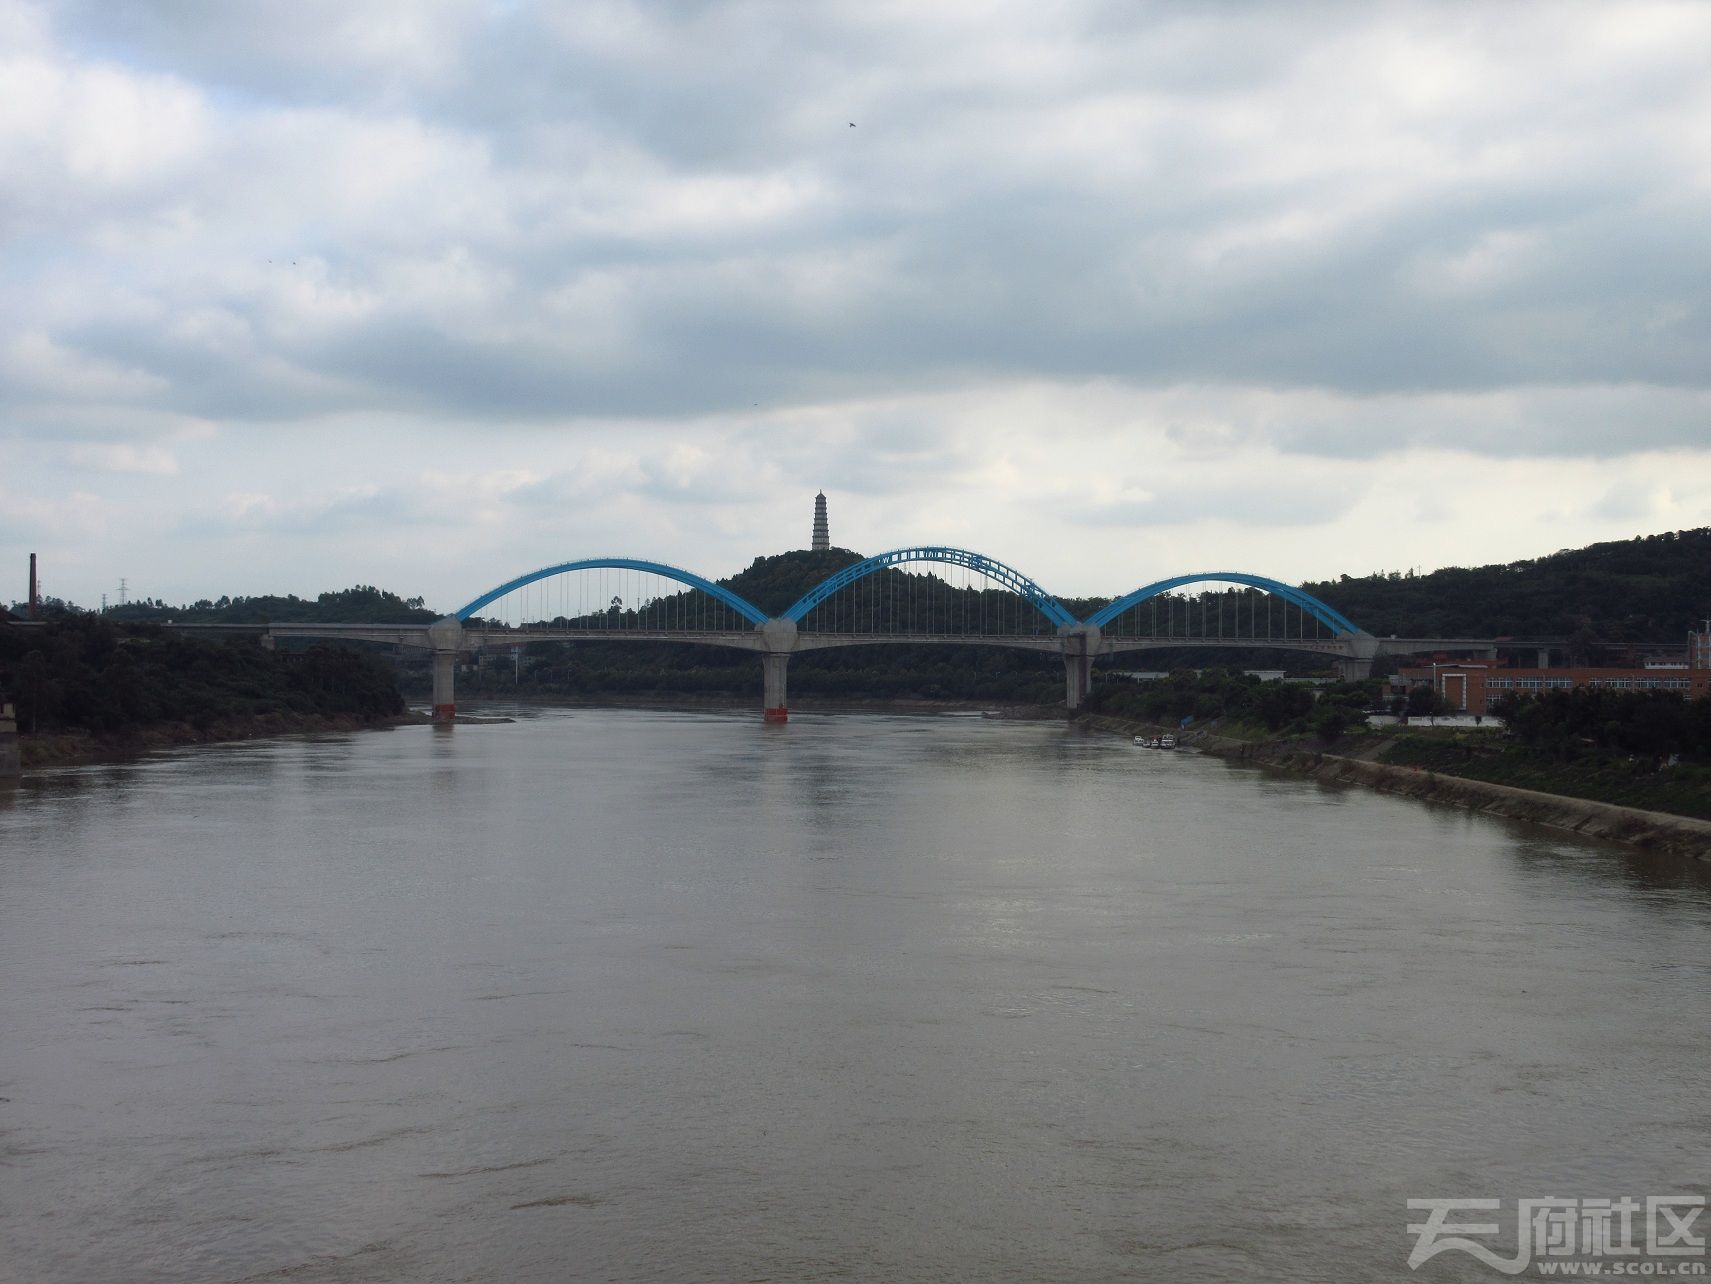 内江老沱江大桥以及新建的复线桥今日胜利通车了新图40张慢慢观赏